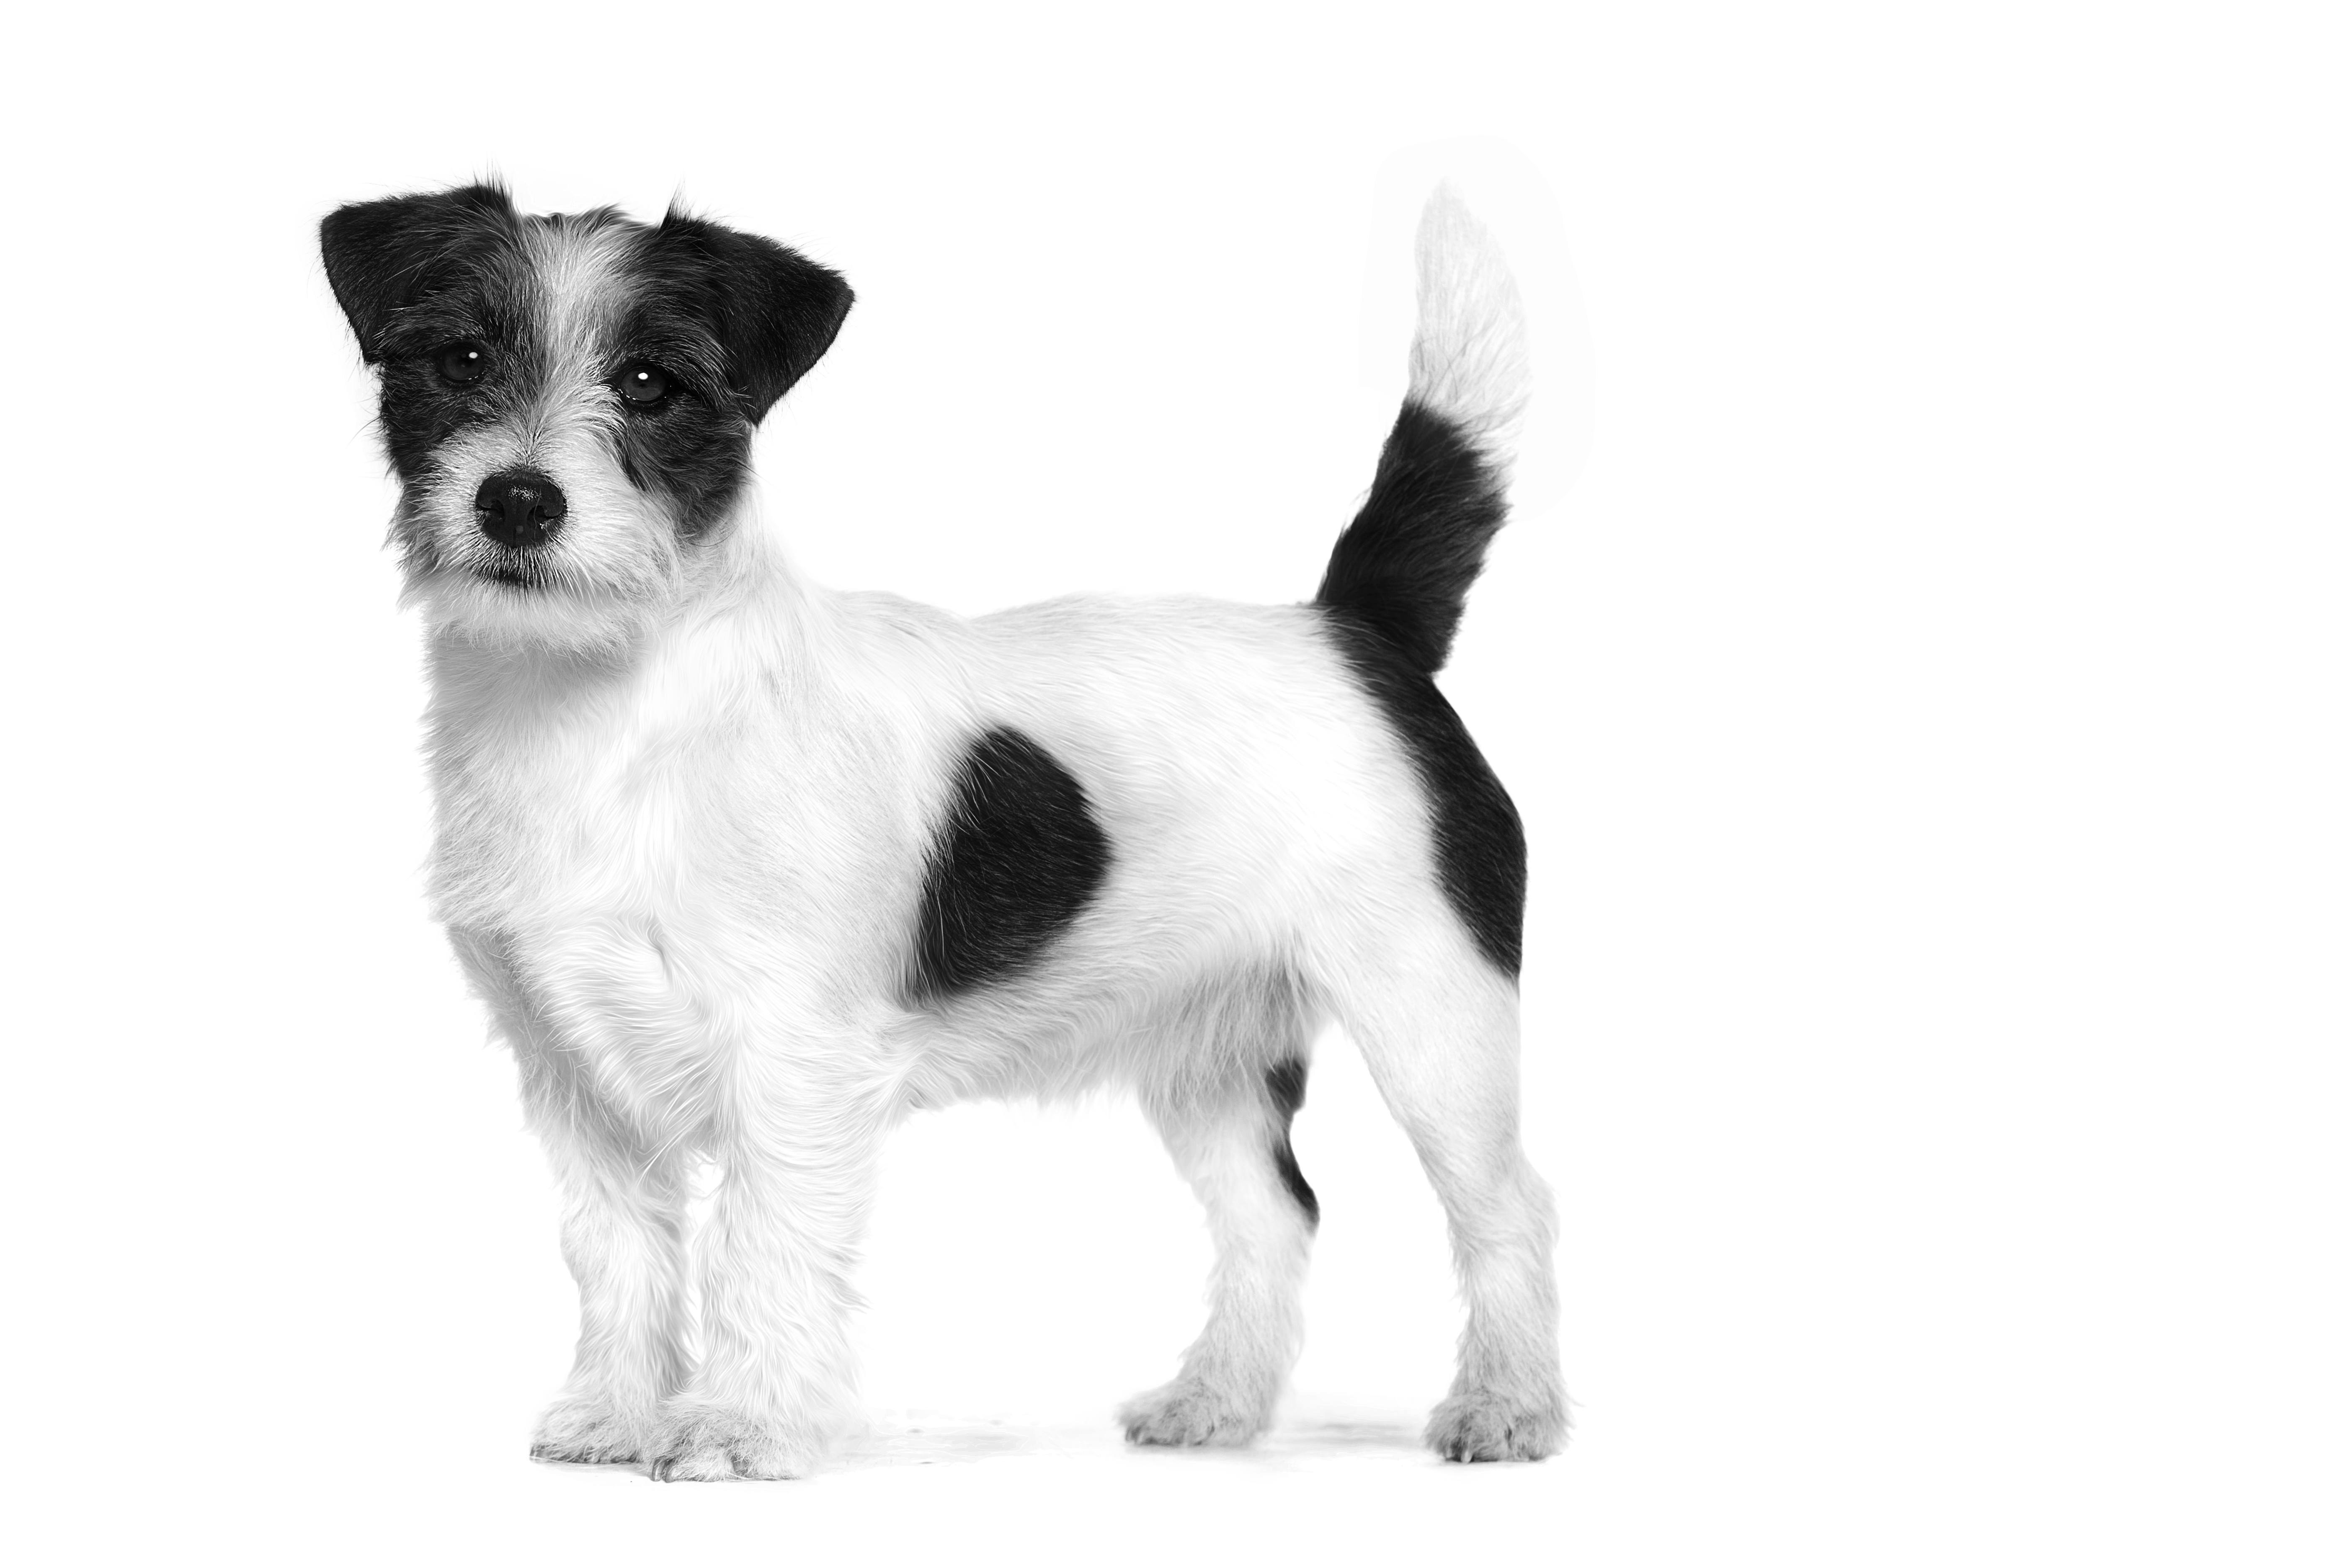 Jack Russell Terrier adulto parado en blanco y negro sobre un fondo blanco